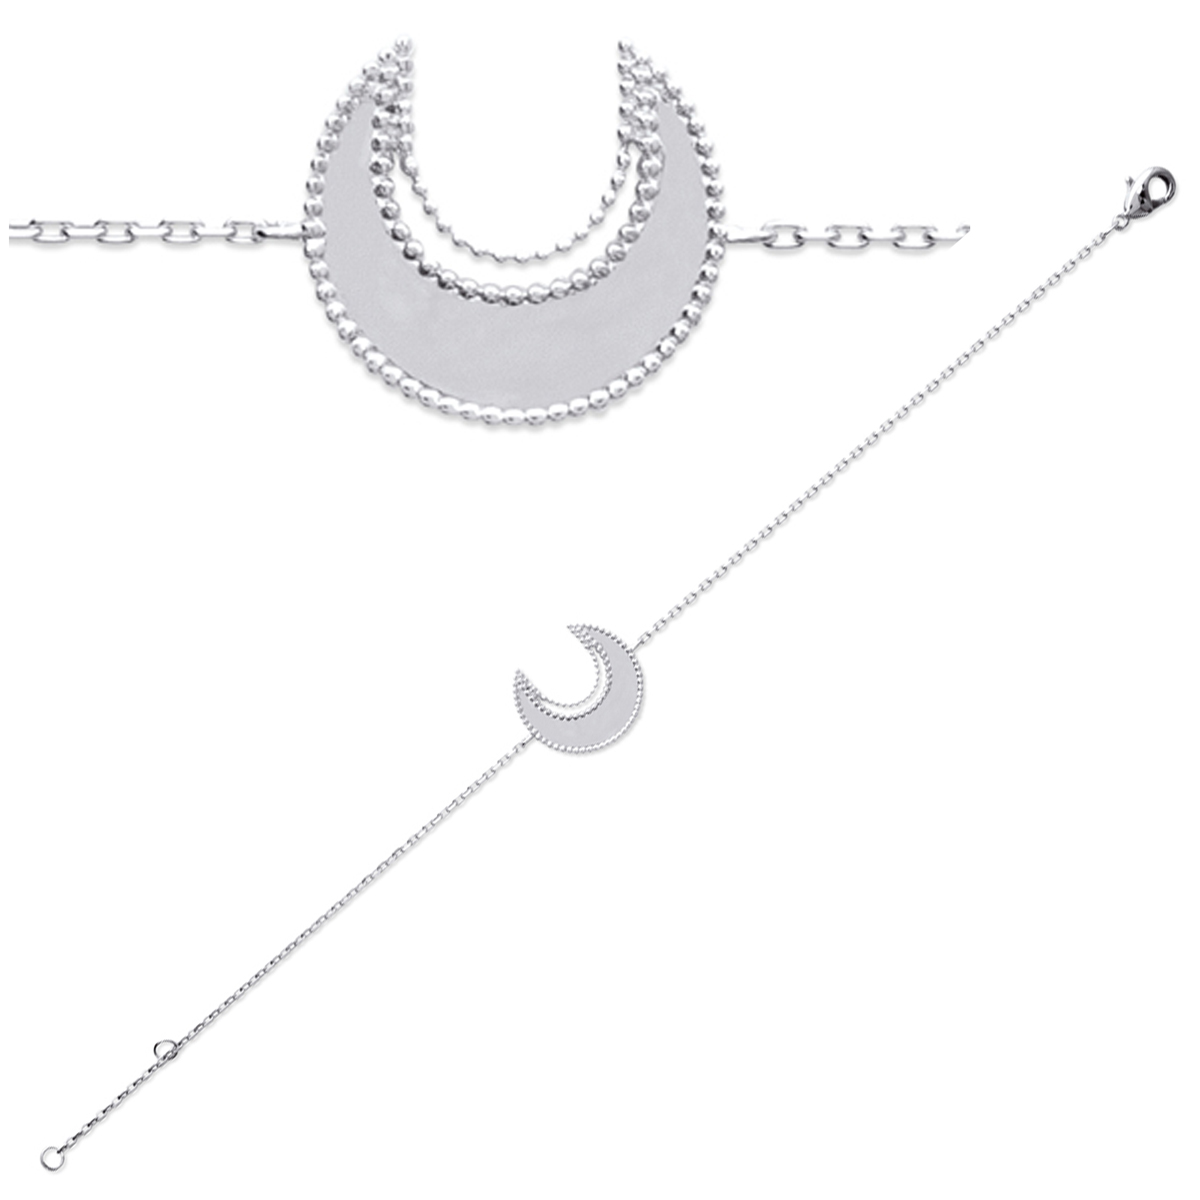 Bracelet Argent \'Cléopatra\' argenté rhodié (lune) - 18 cm 15x15 mm - [P7832]